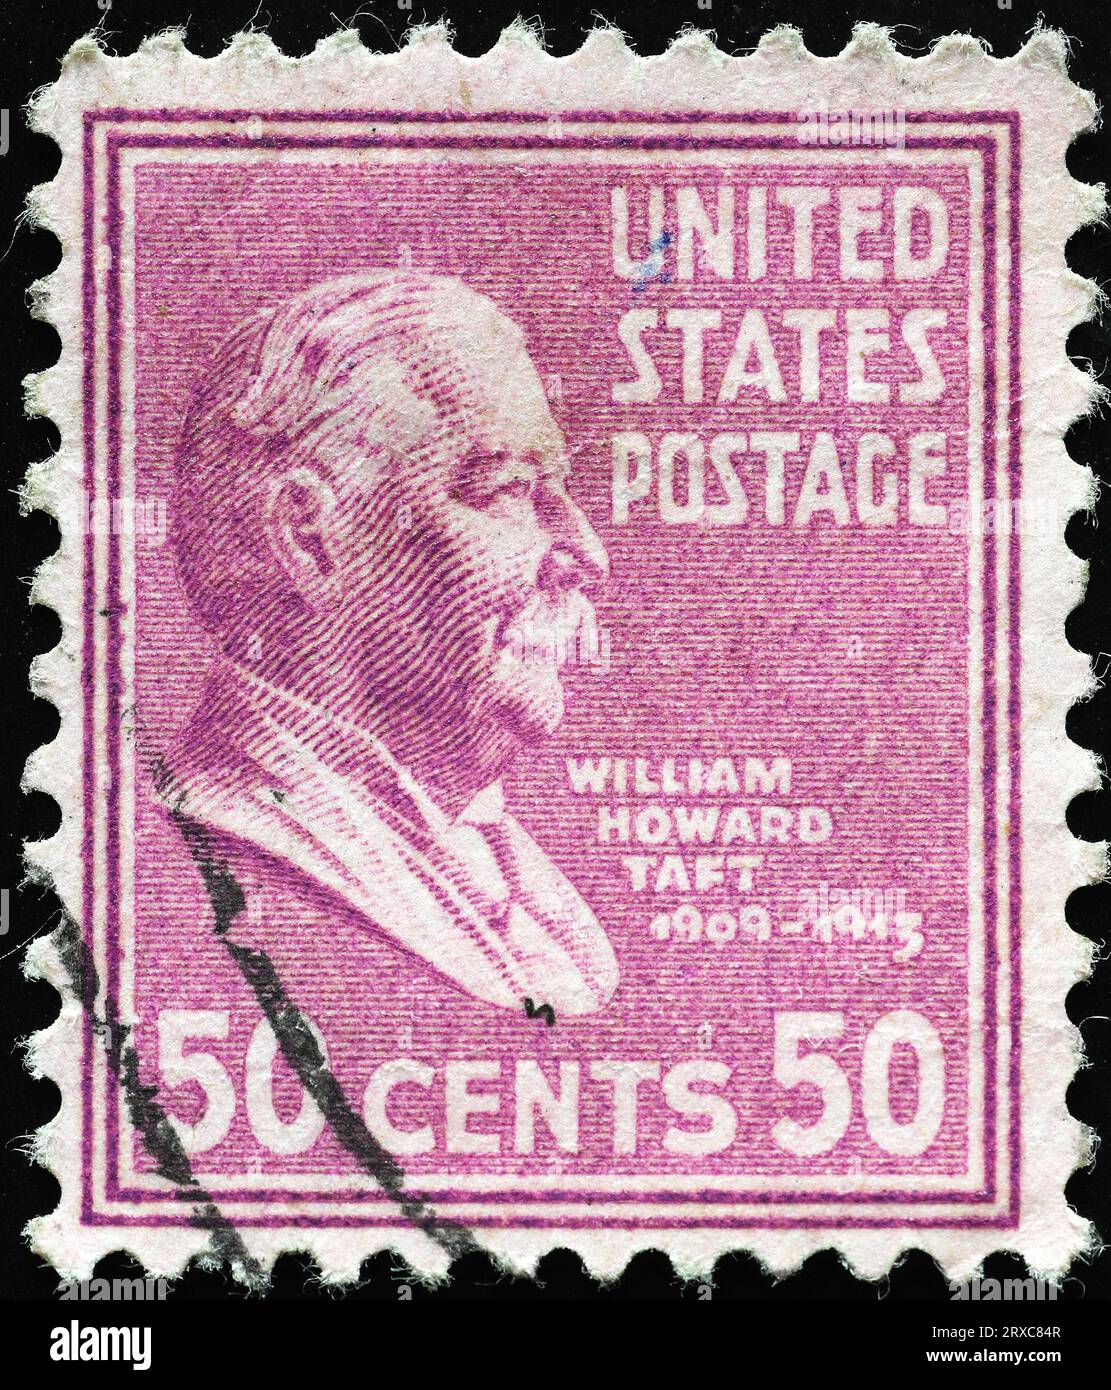 US President William Howard Taft on vintage postage stamp Stock Photo